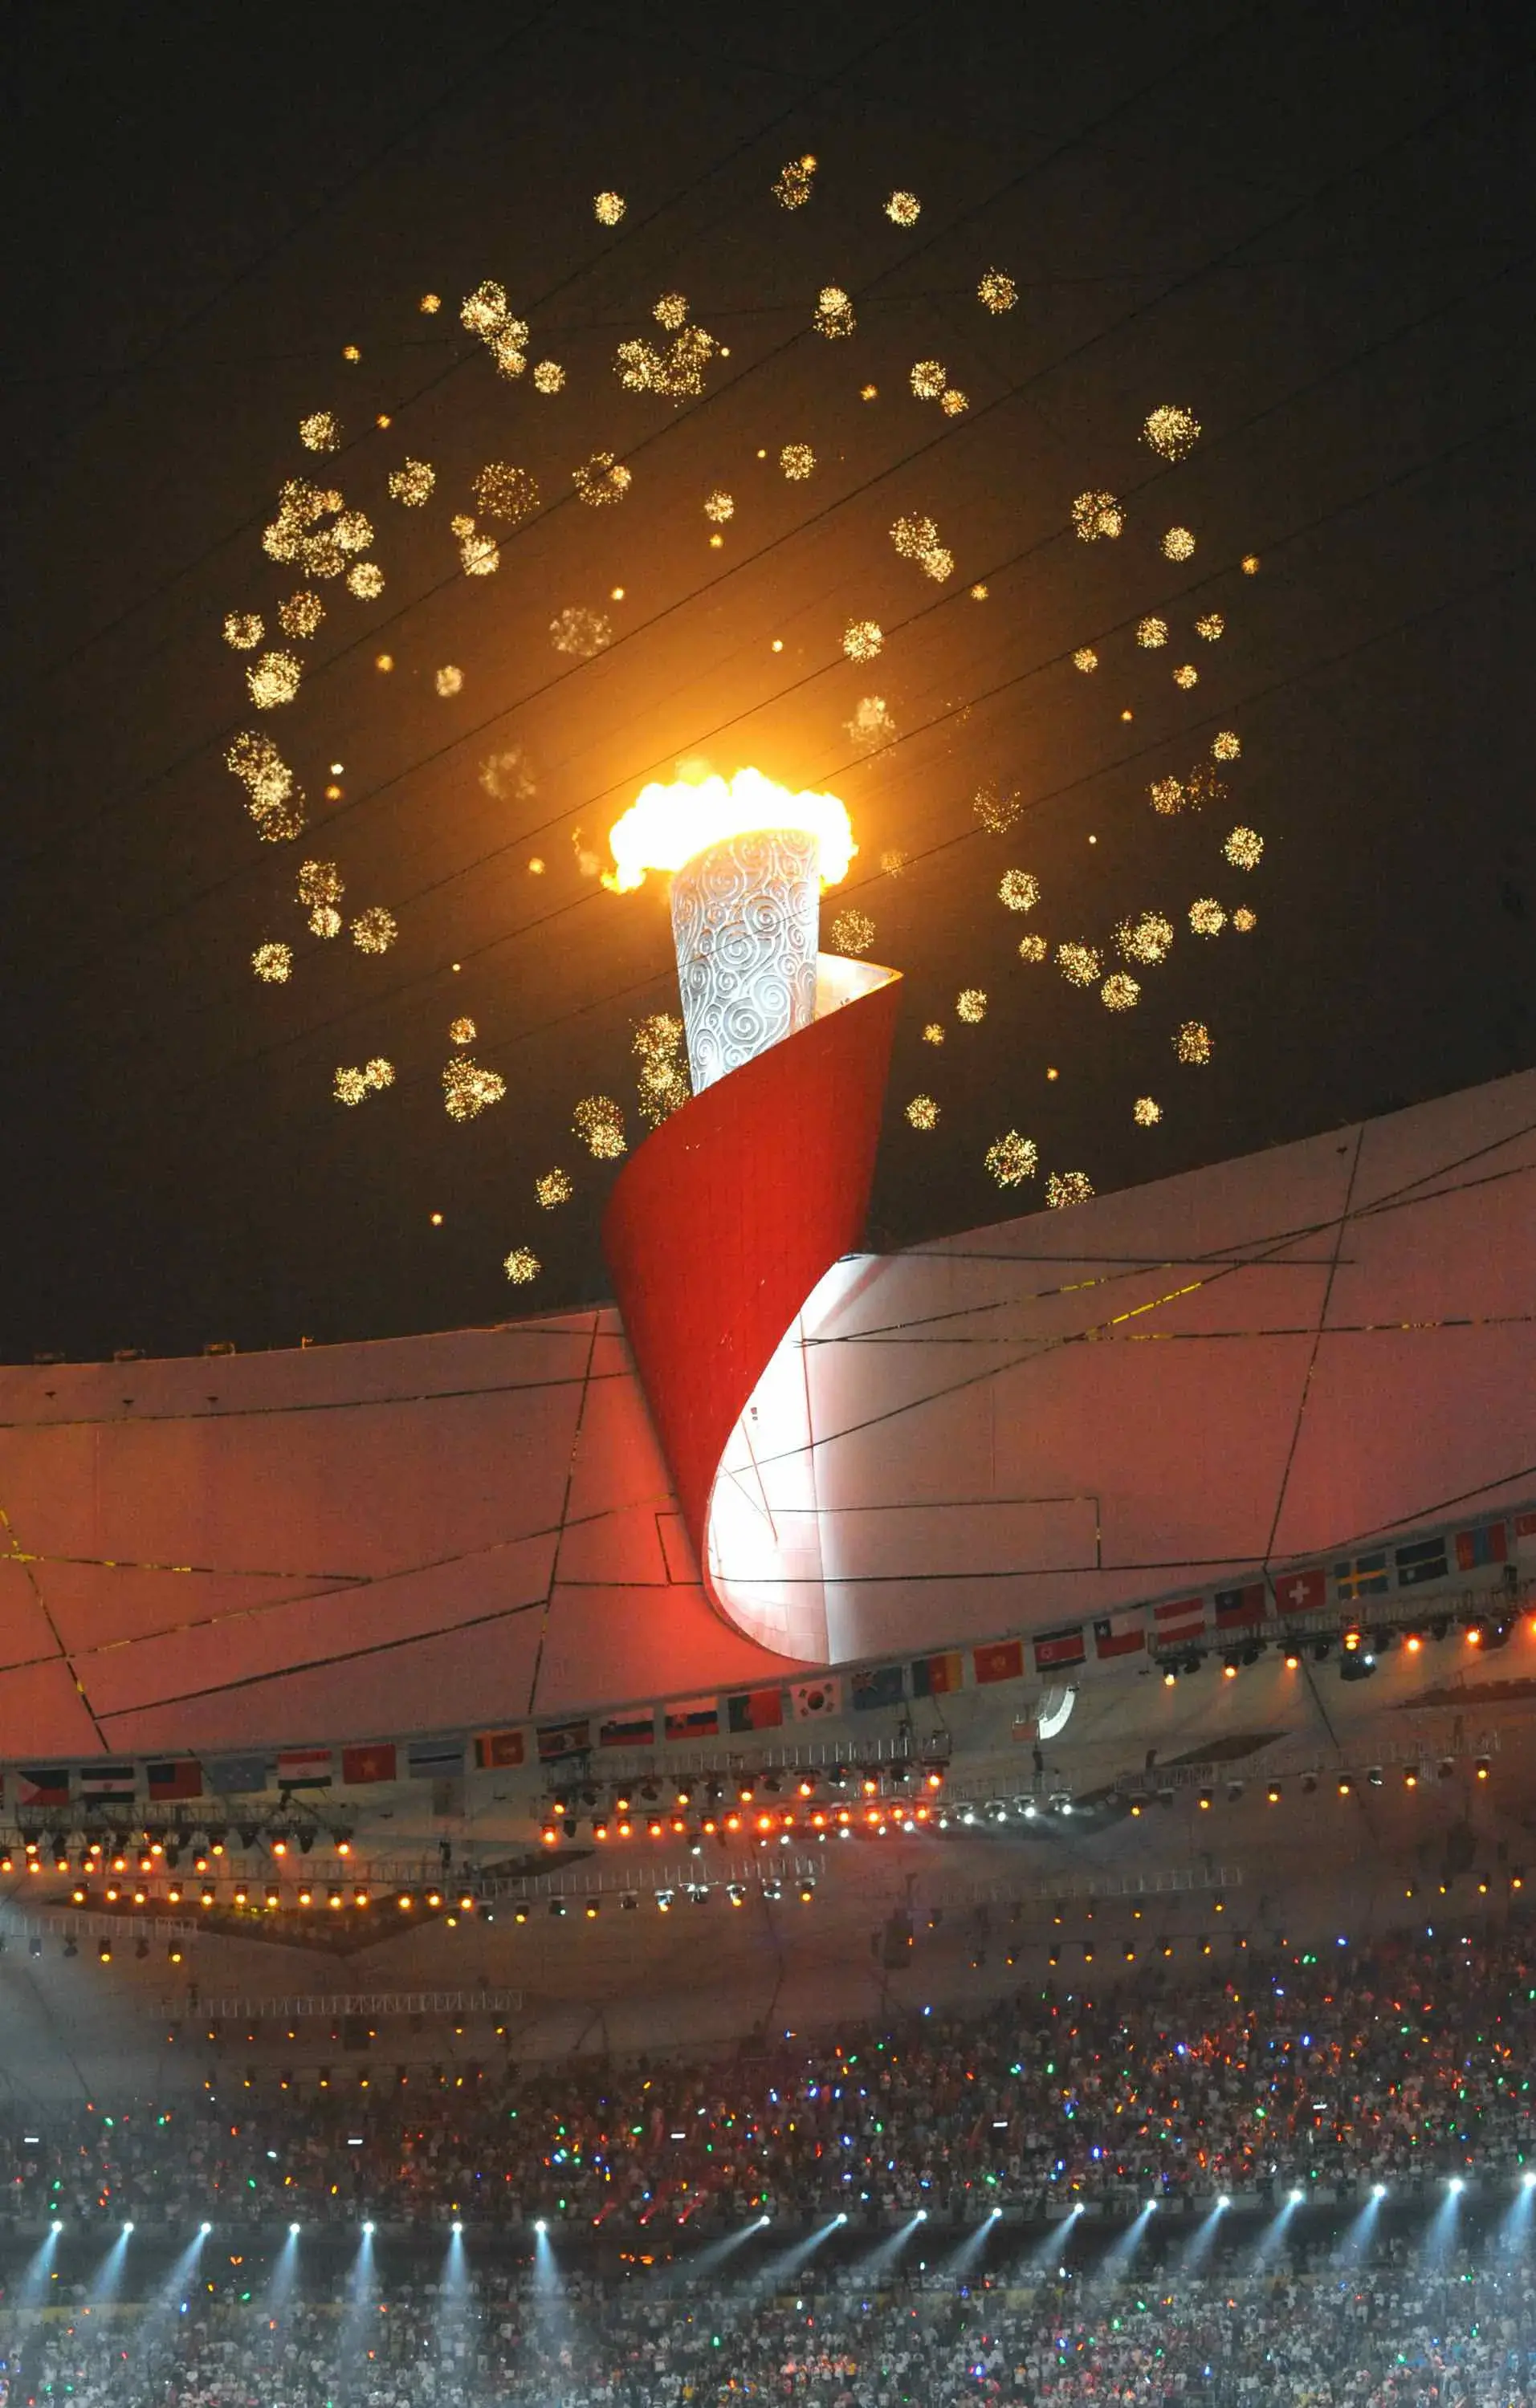 2008年北京奥运会 历史上的今天,2008年北京奥运会开幕